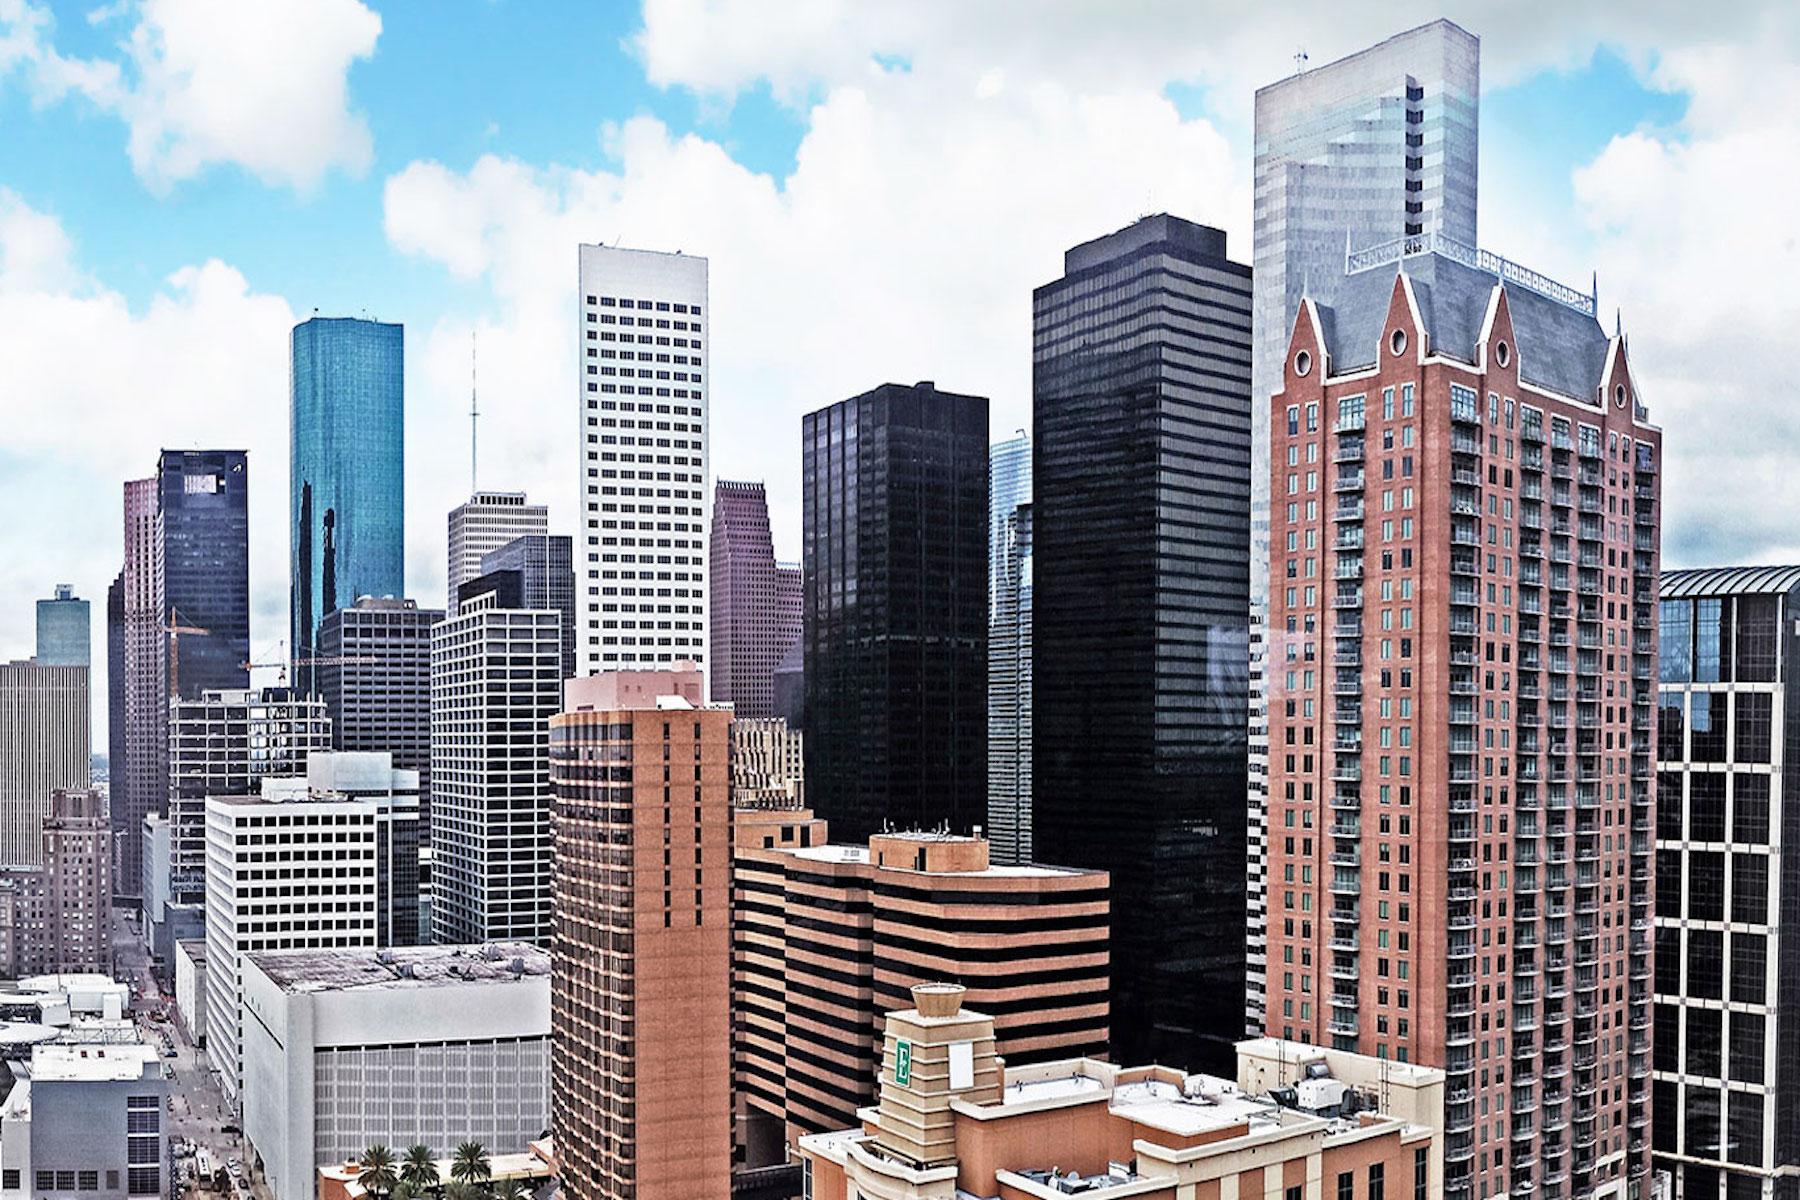 Image of Houston skyline